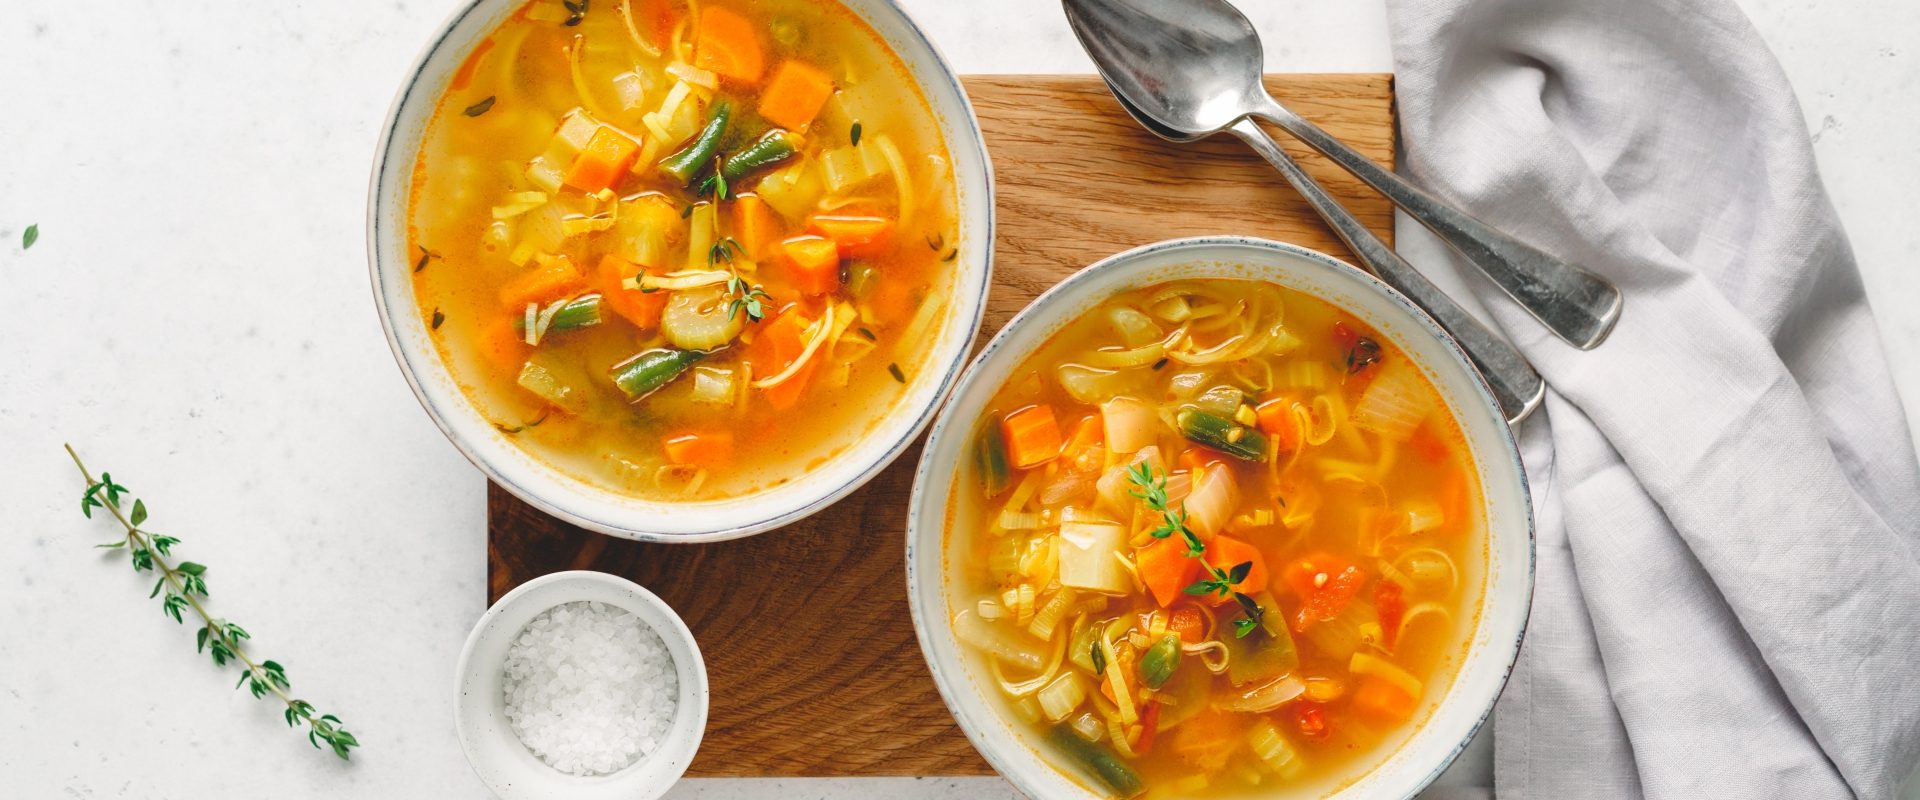 Zupy mocy - jak ugotować wzmacniającą zupę rozgrzewającą? Rosół z kury w białych miseczkach.